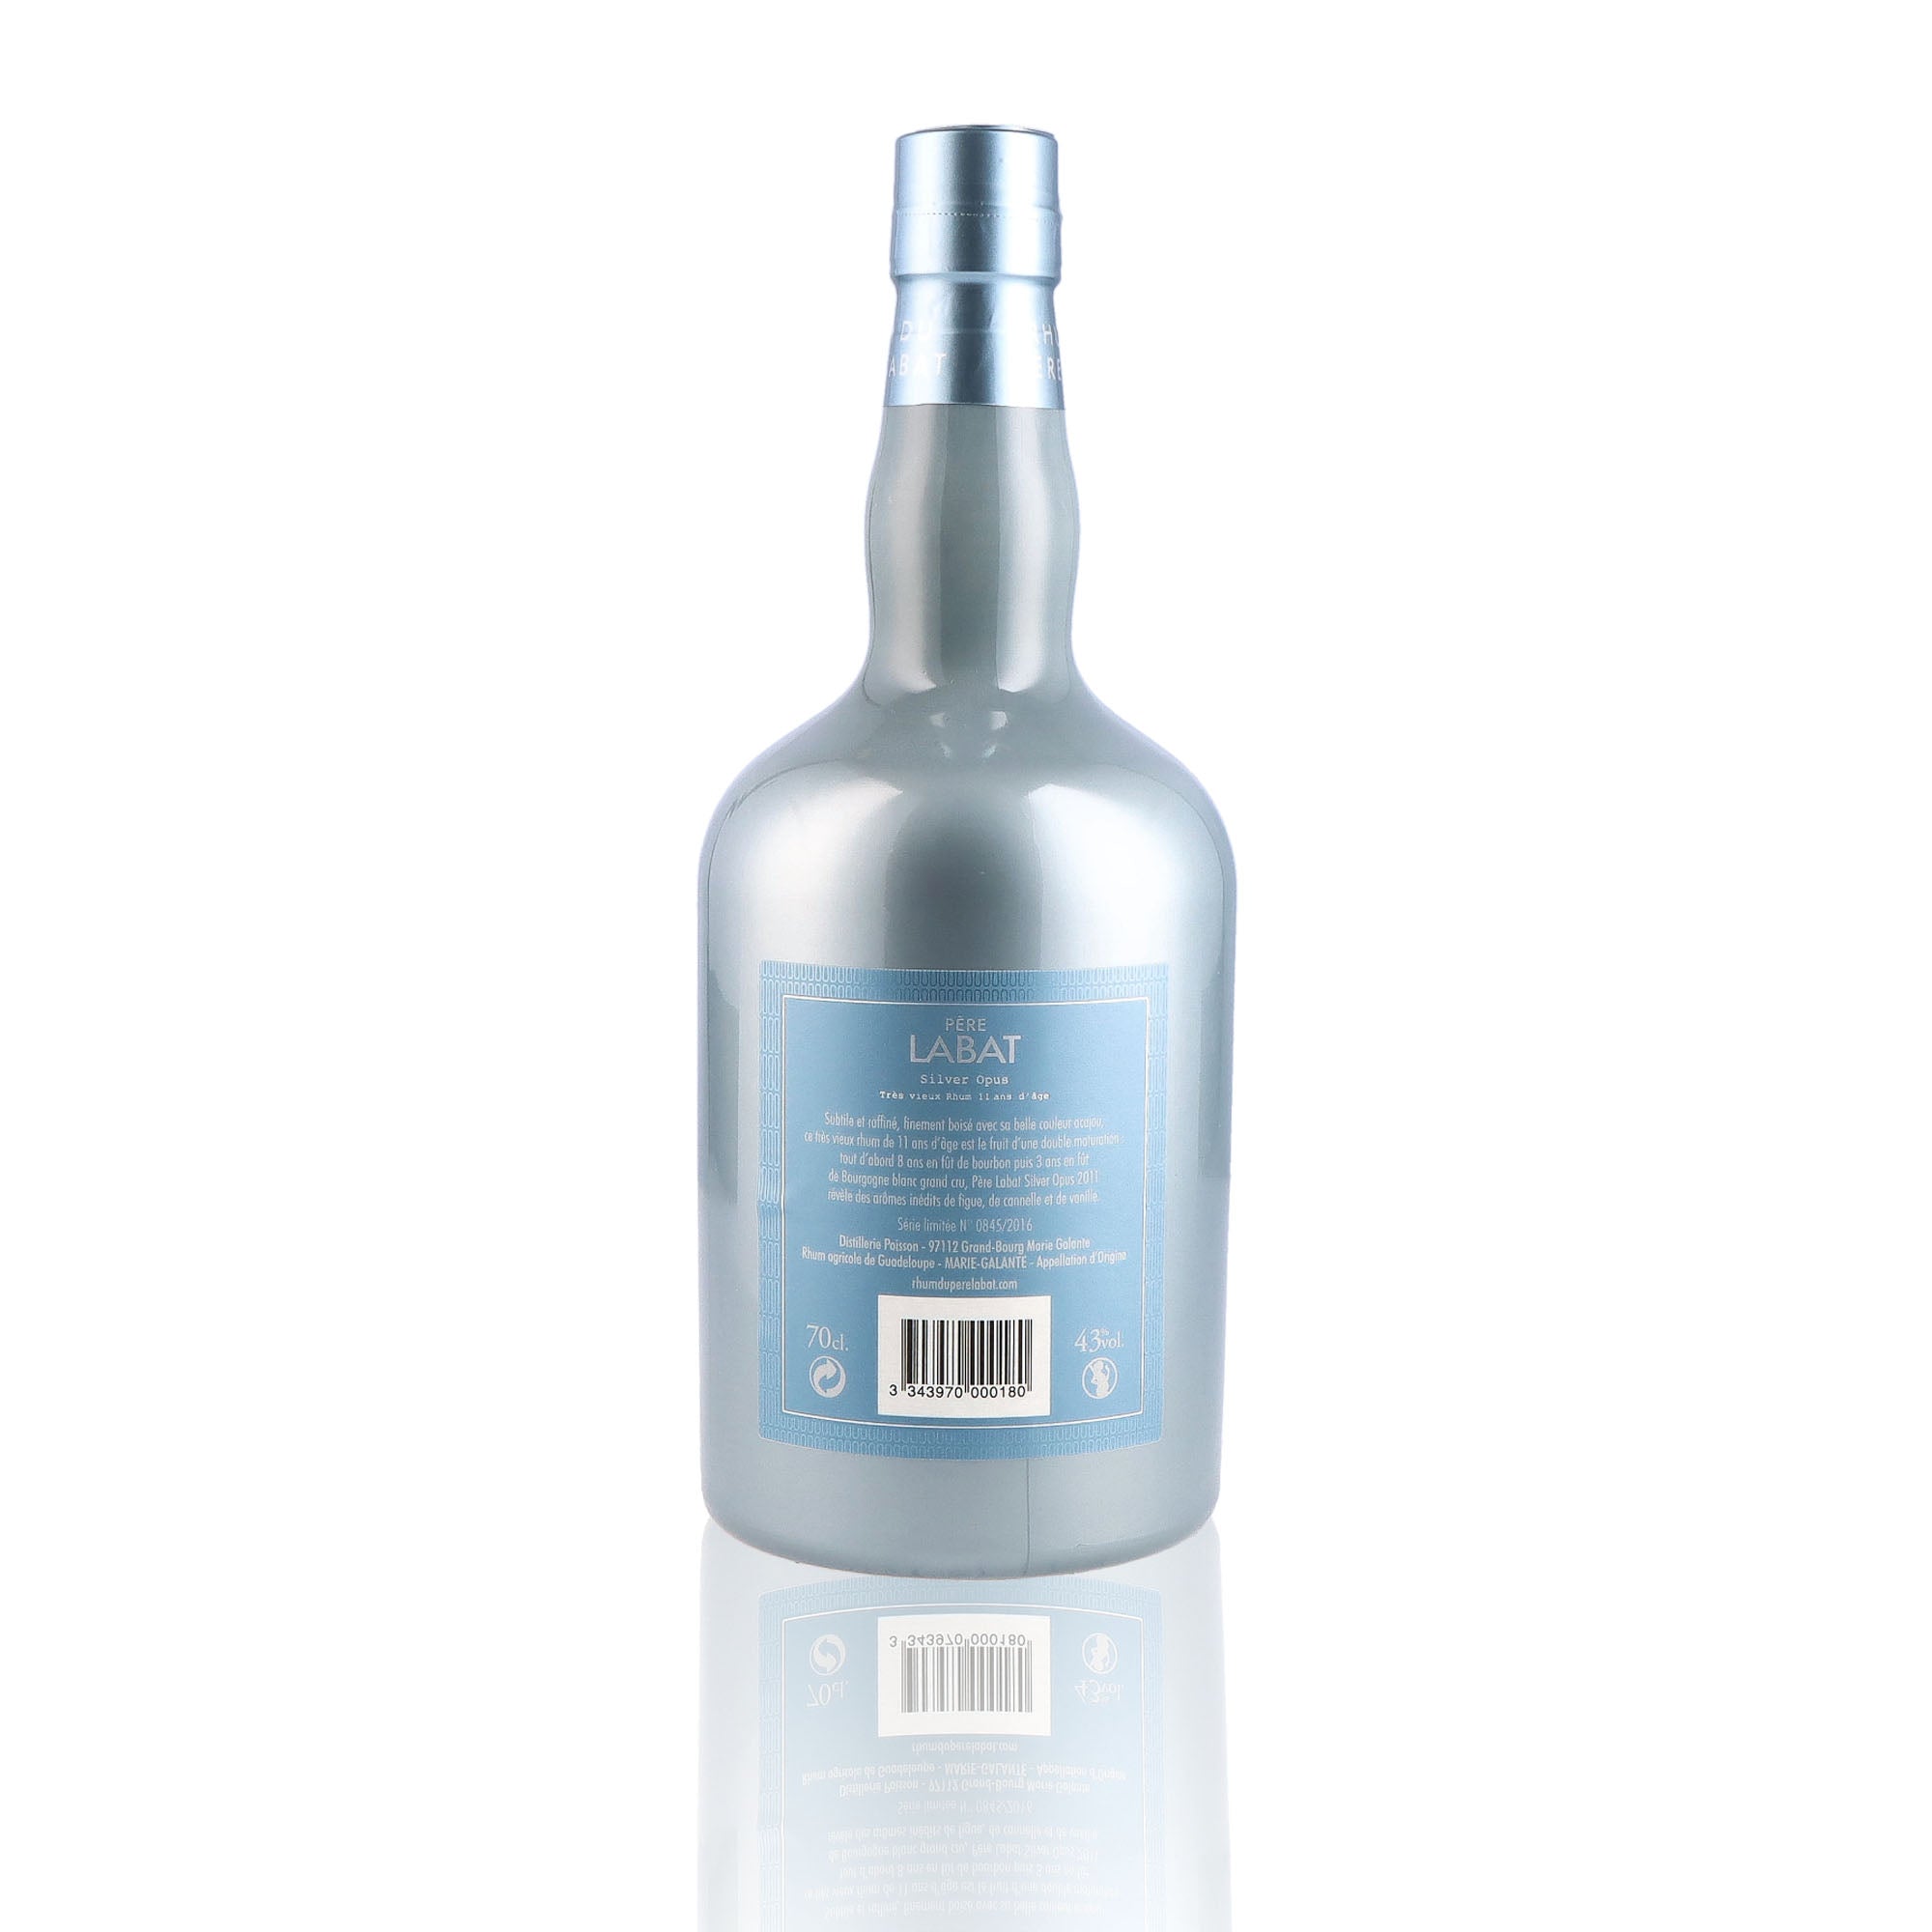 Une bouteille de rhum vieux, de la marque Pere Labat, nommée Silver Opus, du millésime 2011.